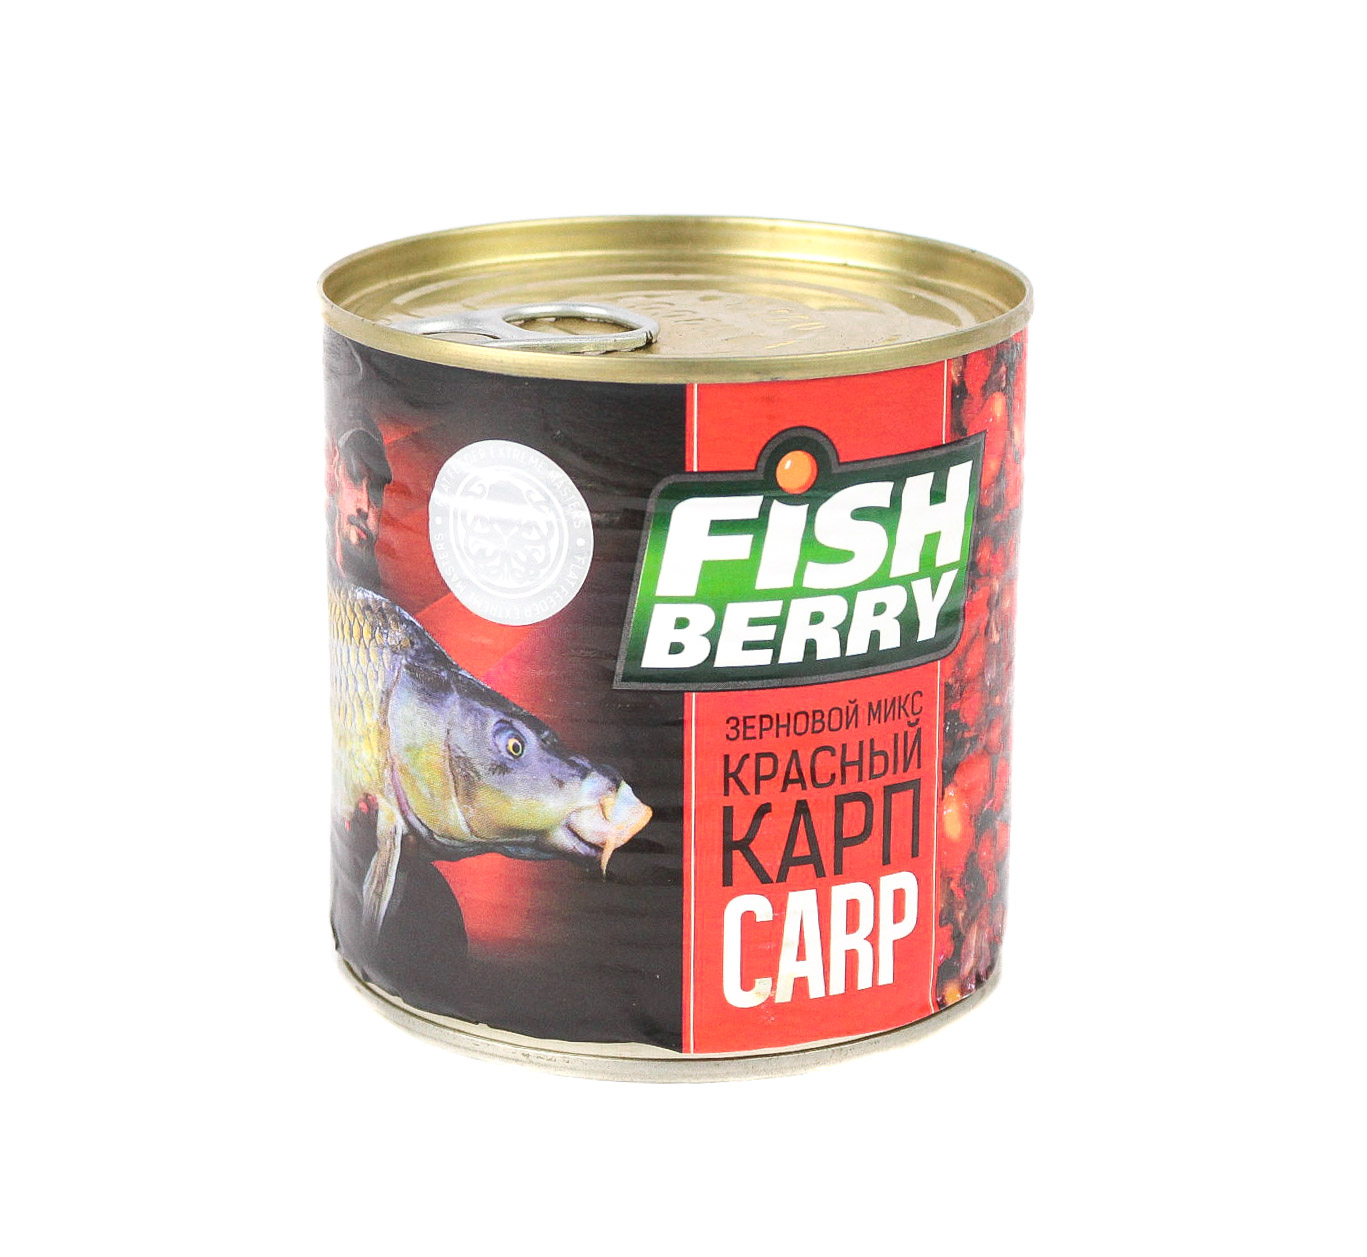 Консервированная зерновая смесь Fish Berry Попова карп красный клубника 430мл - фото 1